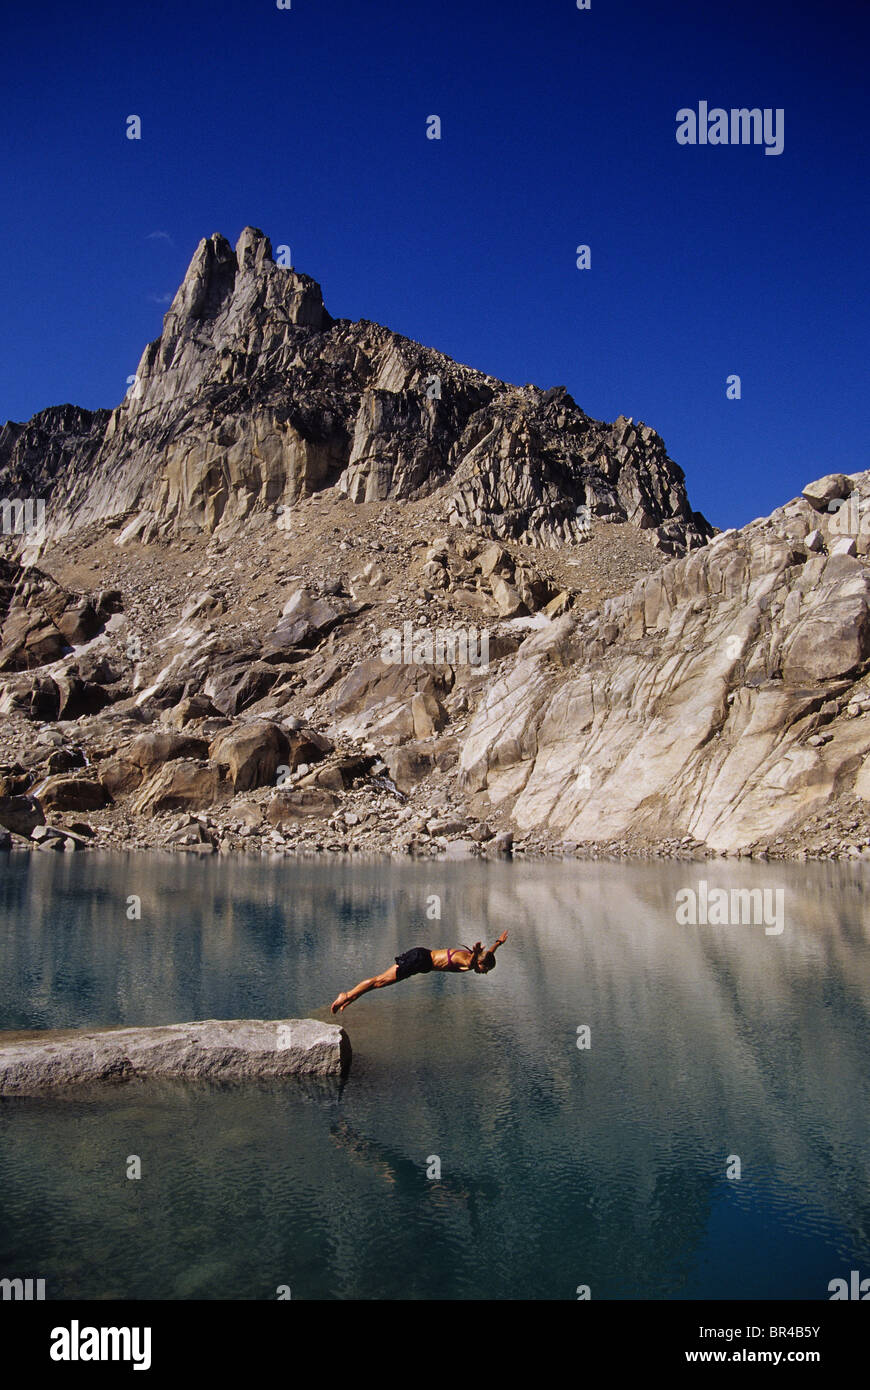 A woman diving into a mountain lake, Bugaboos, Canada Stock Photo